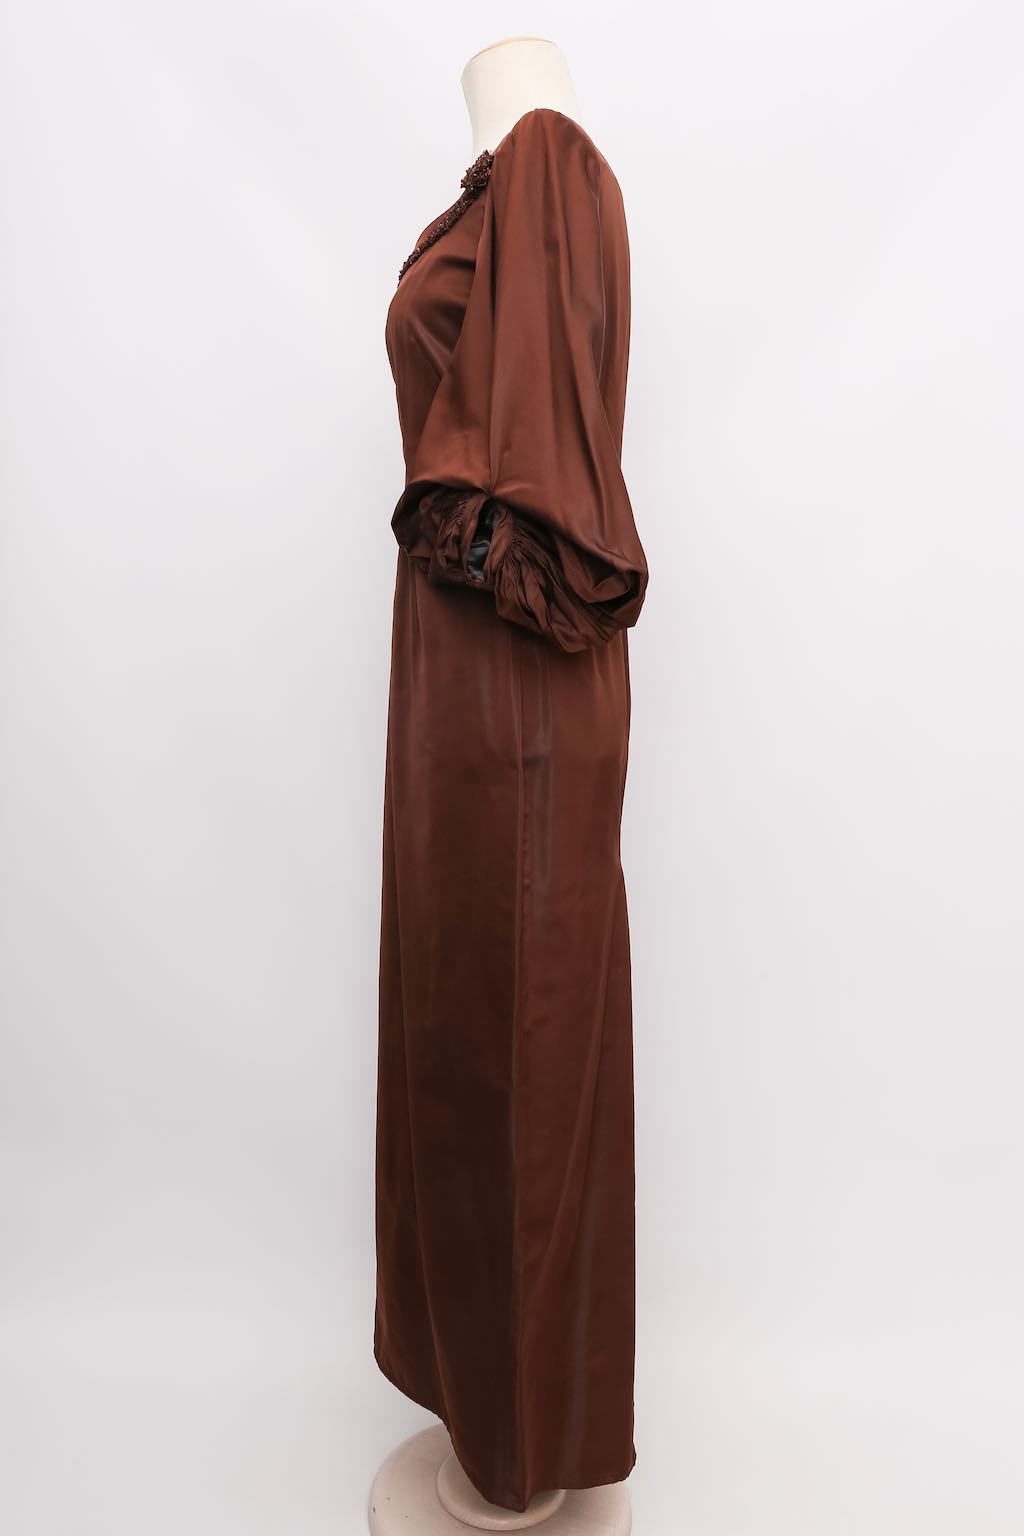 Jean-Paul Gaultier taffeta dress